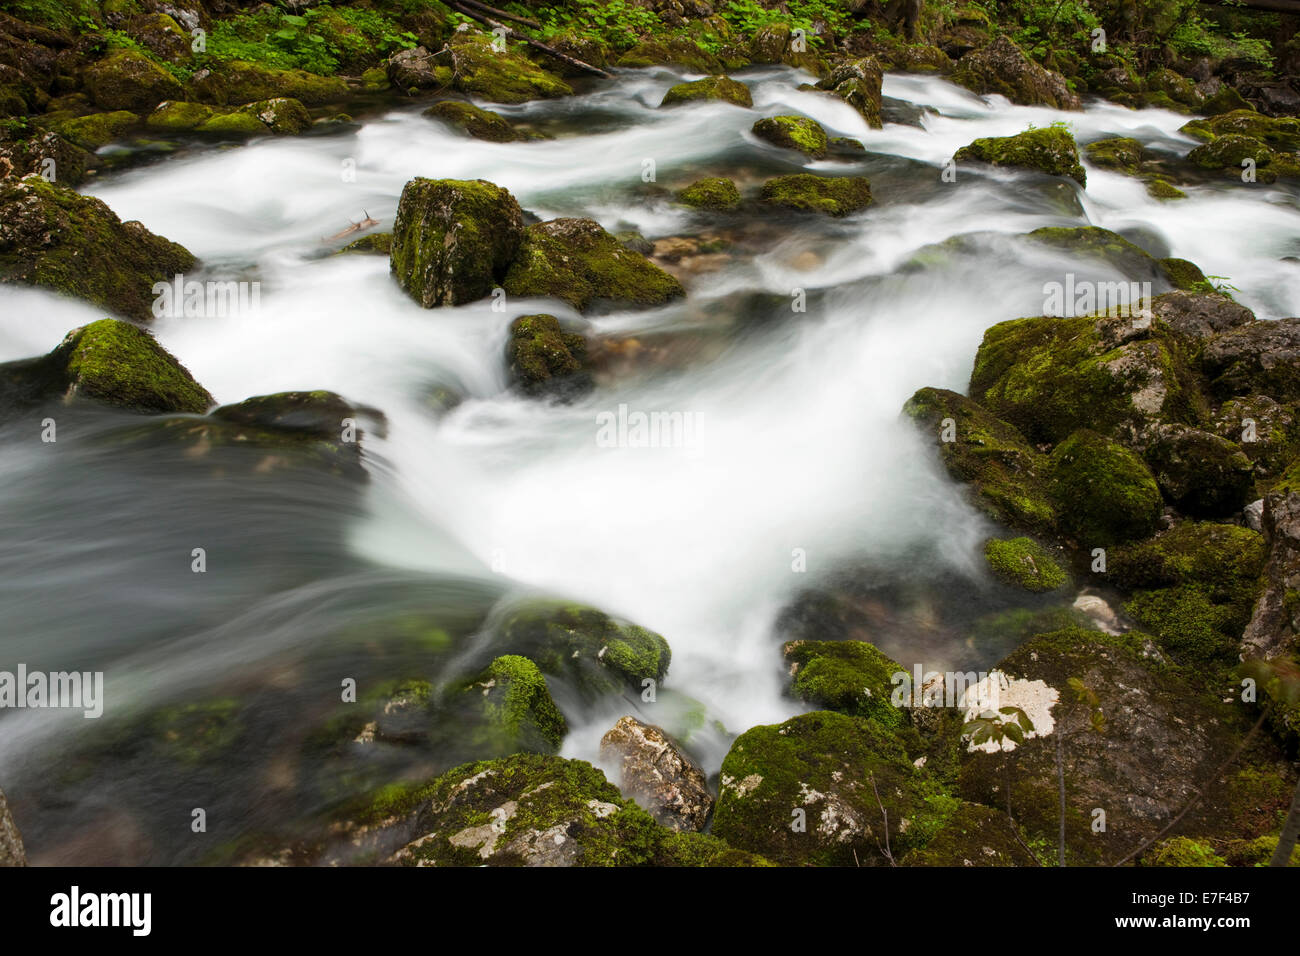 Bach mit moosbewachsenen Steinen, Gollinger Wasserfall, Salzburg, AustriaSteinen, Stockfoto